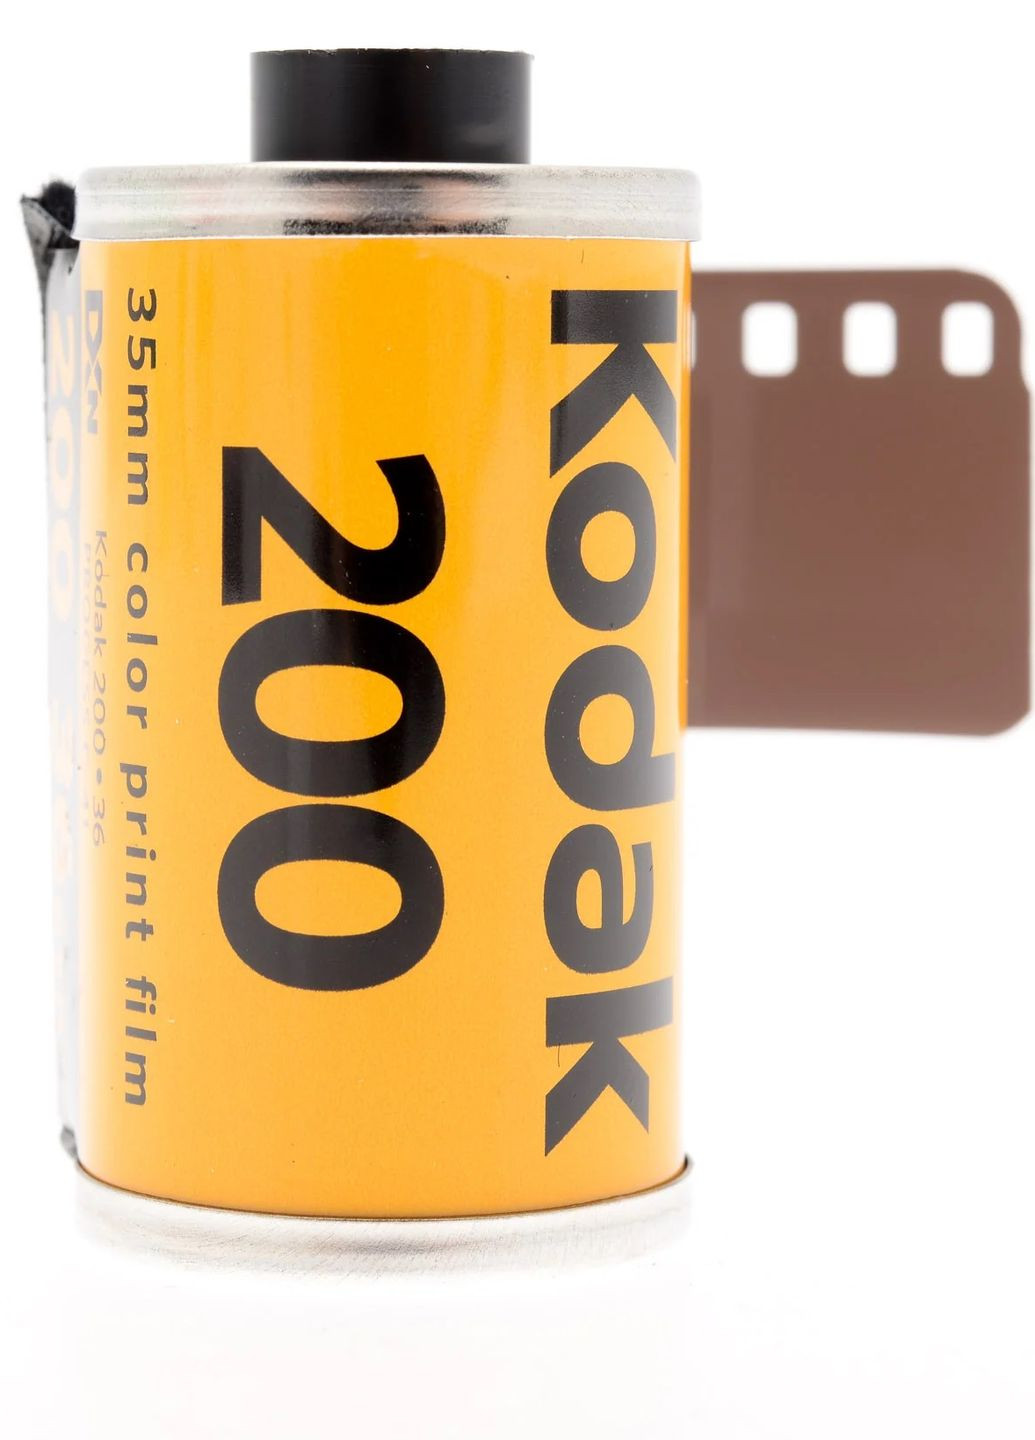 Фотопленка Gold 200/24 Kodak (267507099)